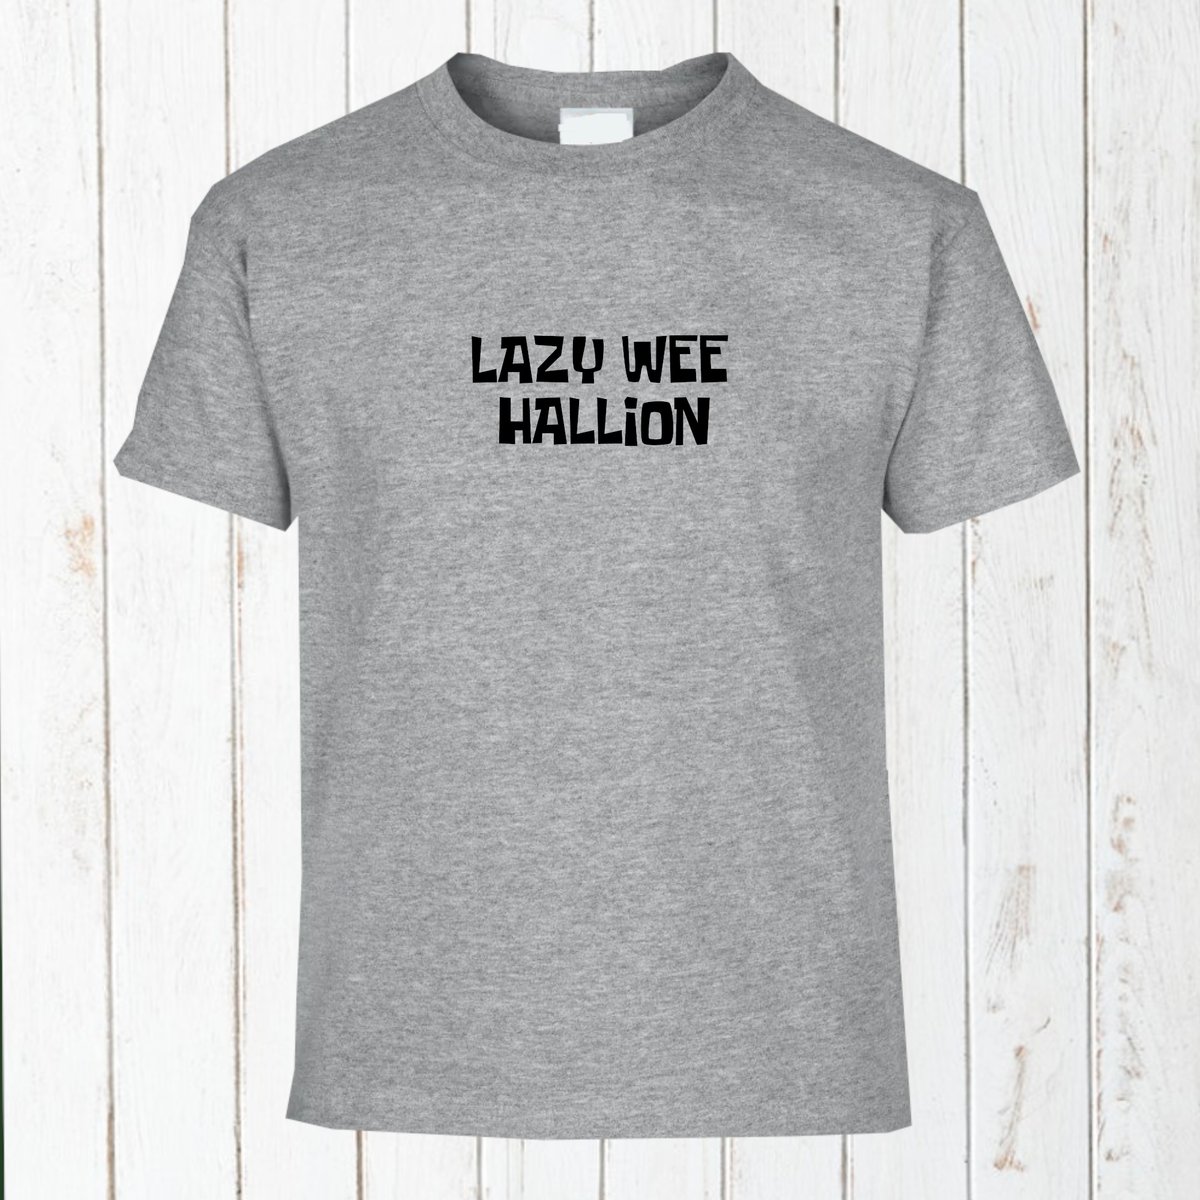 Lazy Wee Hallion T Shirt